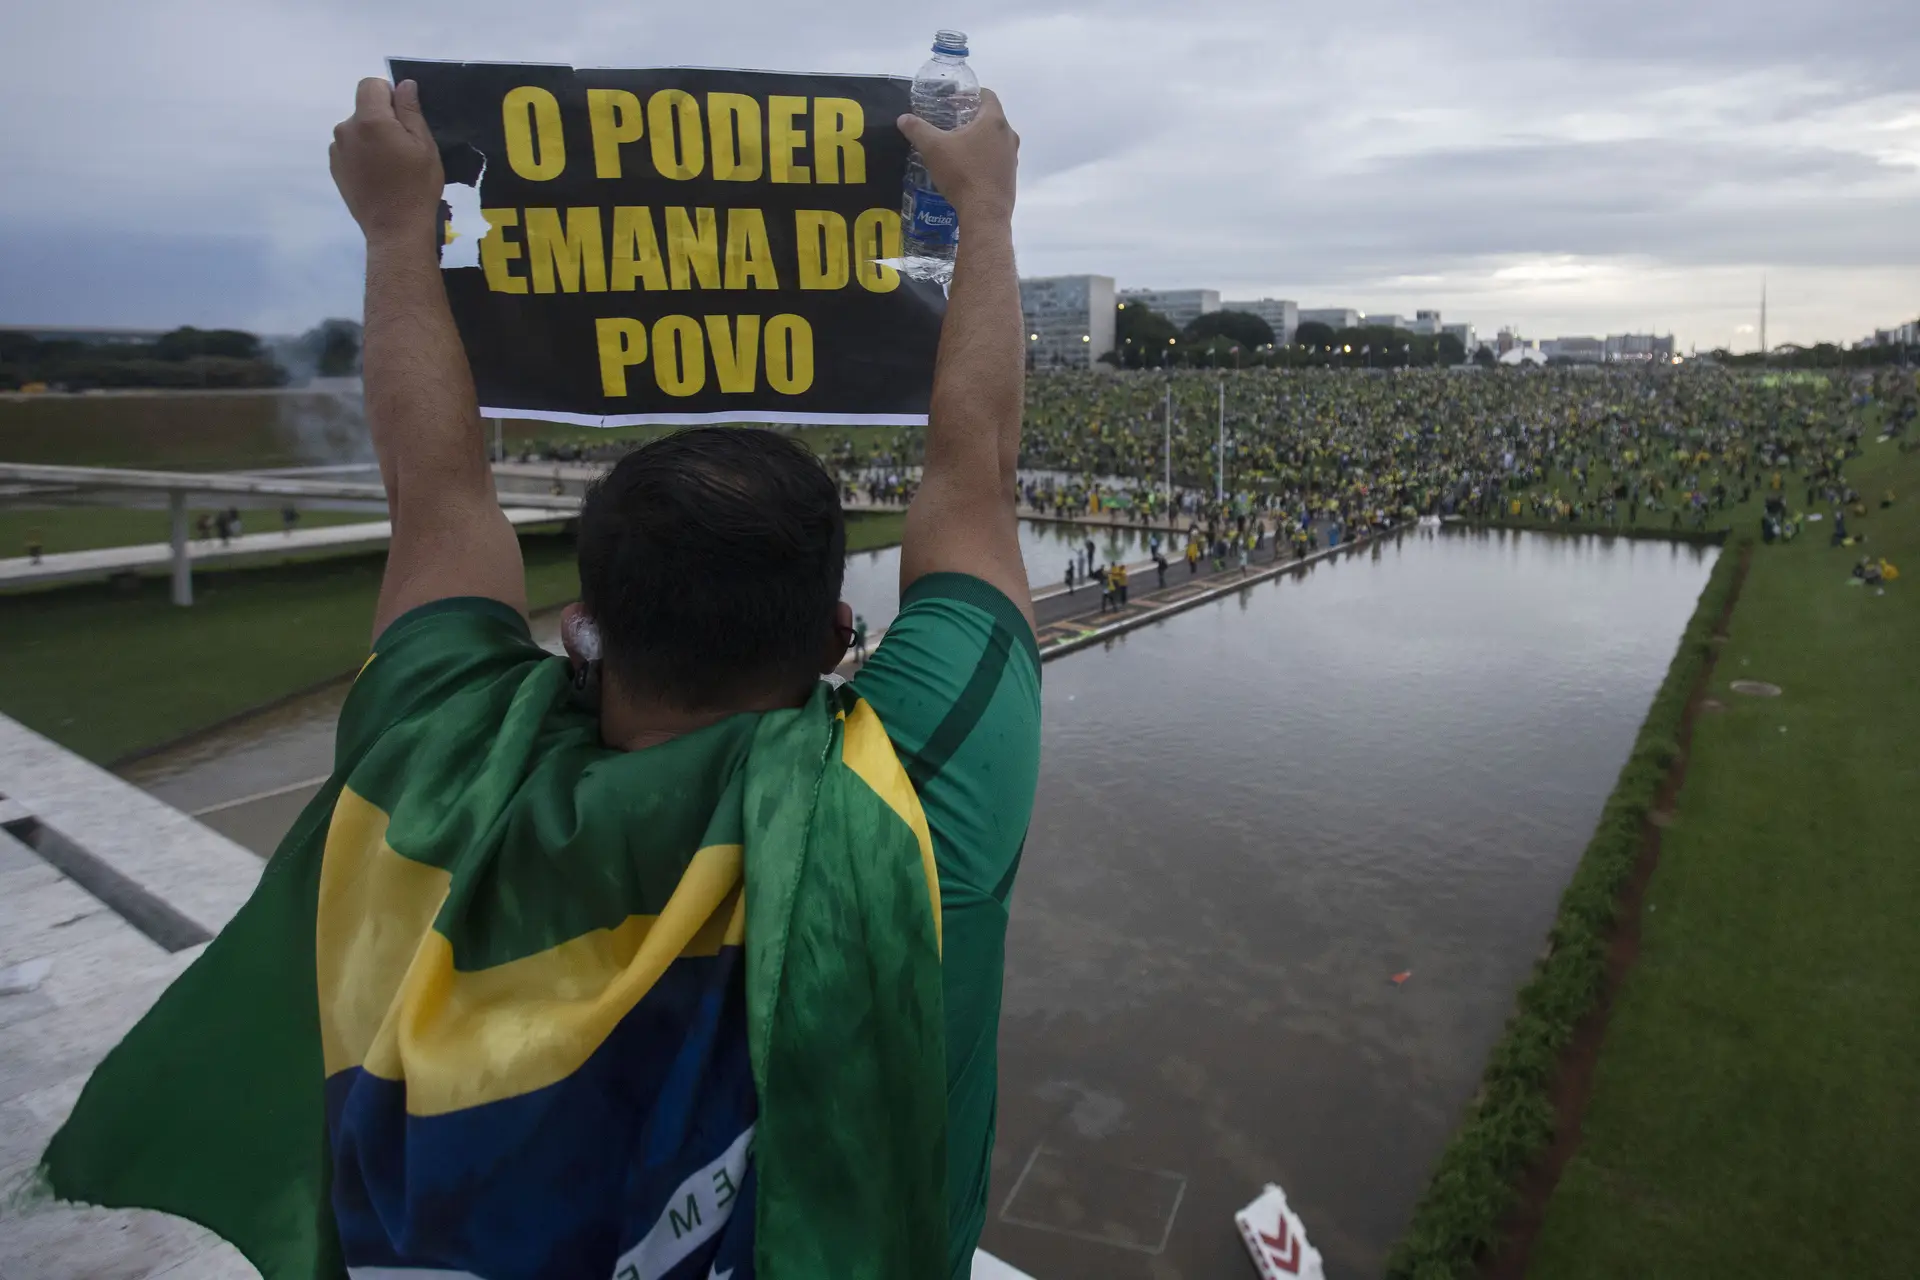 MENSAGEM. “O poder emana do povo” e parte do povo não aceita a decisão tomada nas urnas pela outra parte: a eleição de Lula